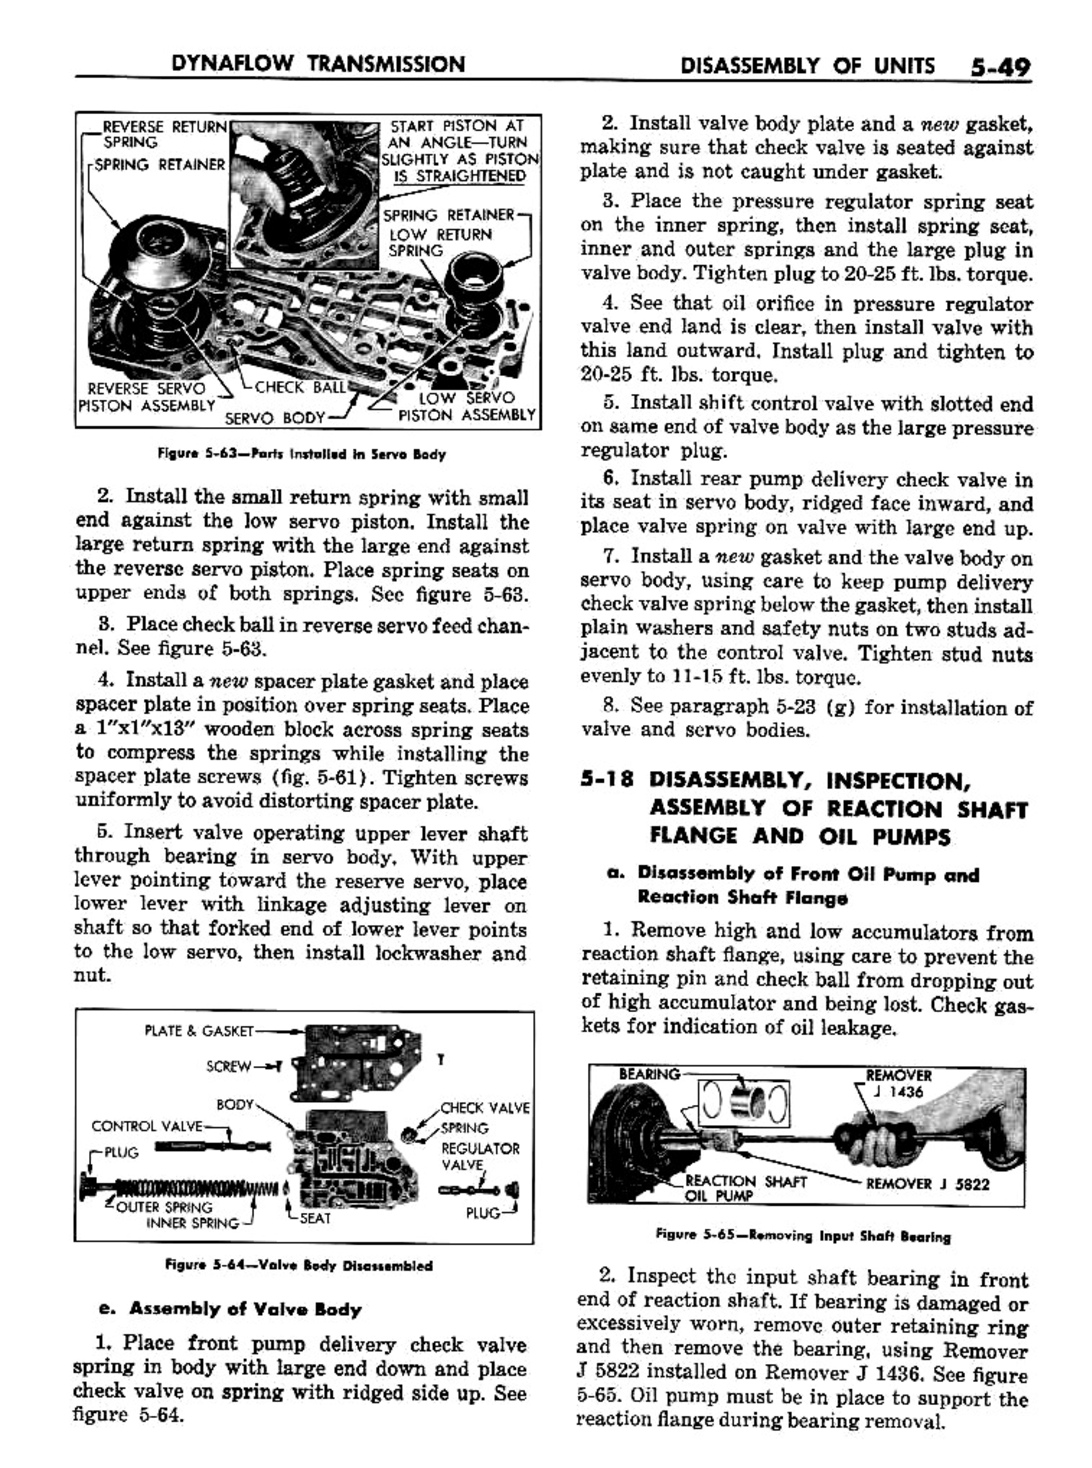 n_06 1957 Buick Shop Manual - Dynaflow-049-049.jpg